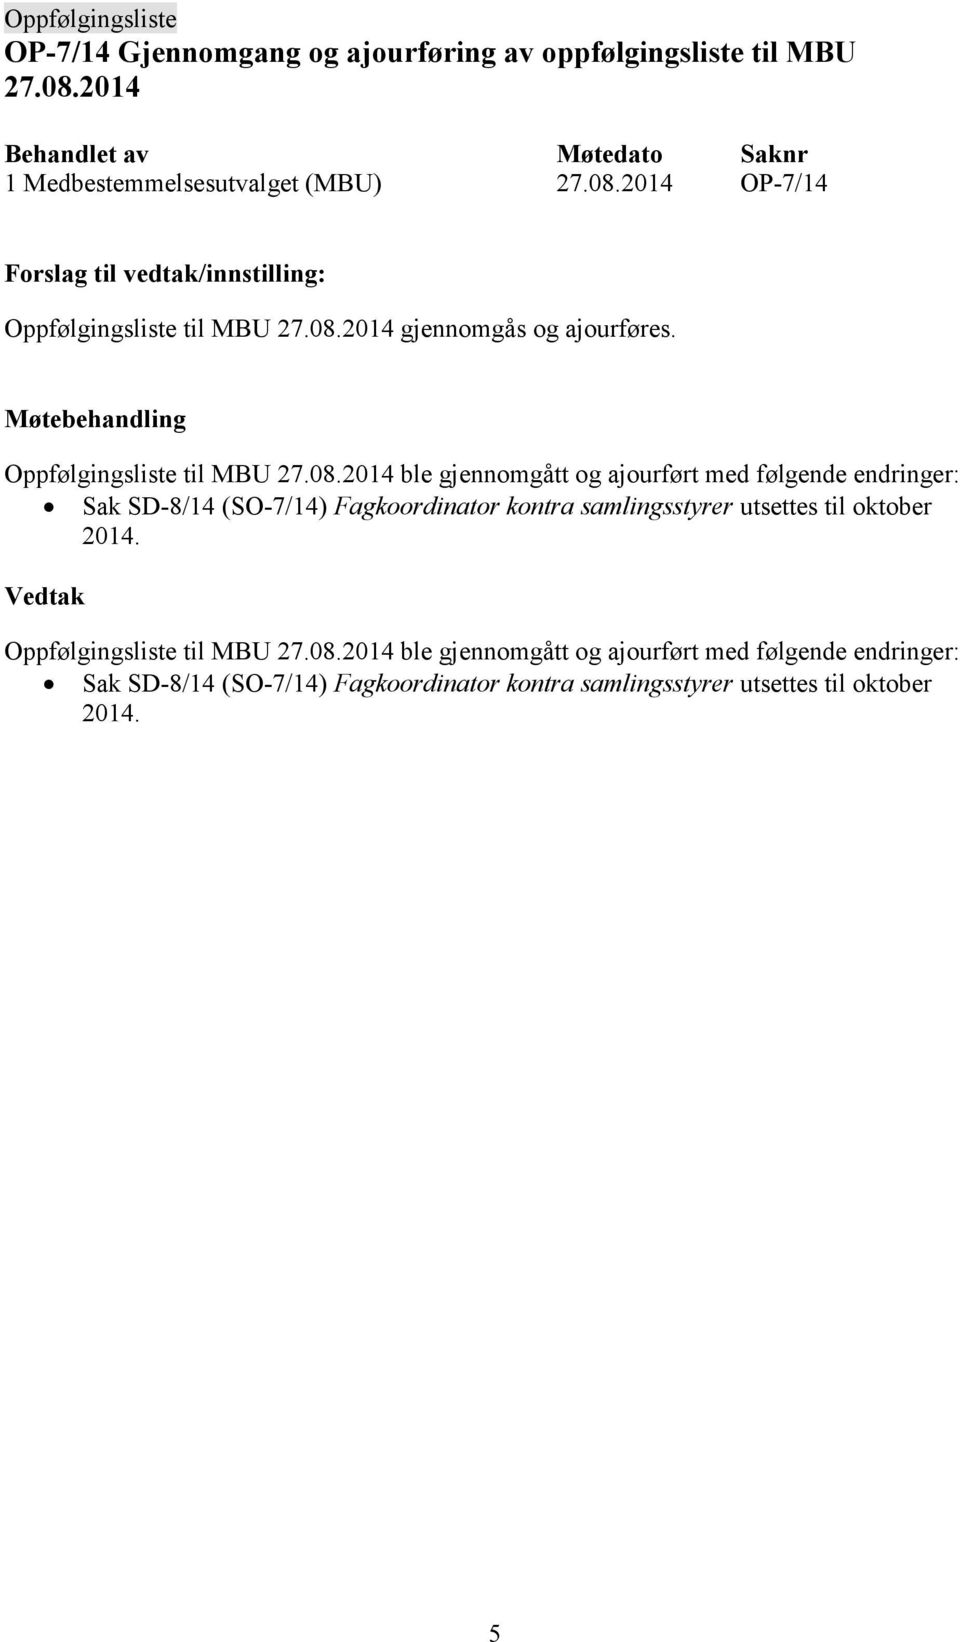 (SO-7/14) Fagkoordinator kontra samlingsstyrer utsettes til oktober 2014. Oppfølgingsliste til MBU 27.08.